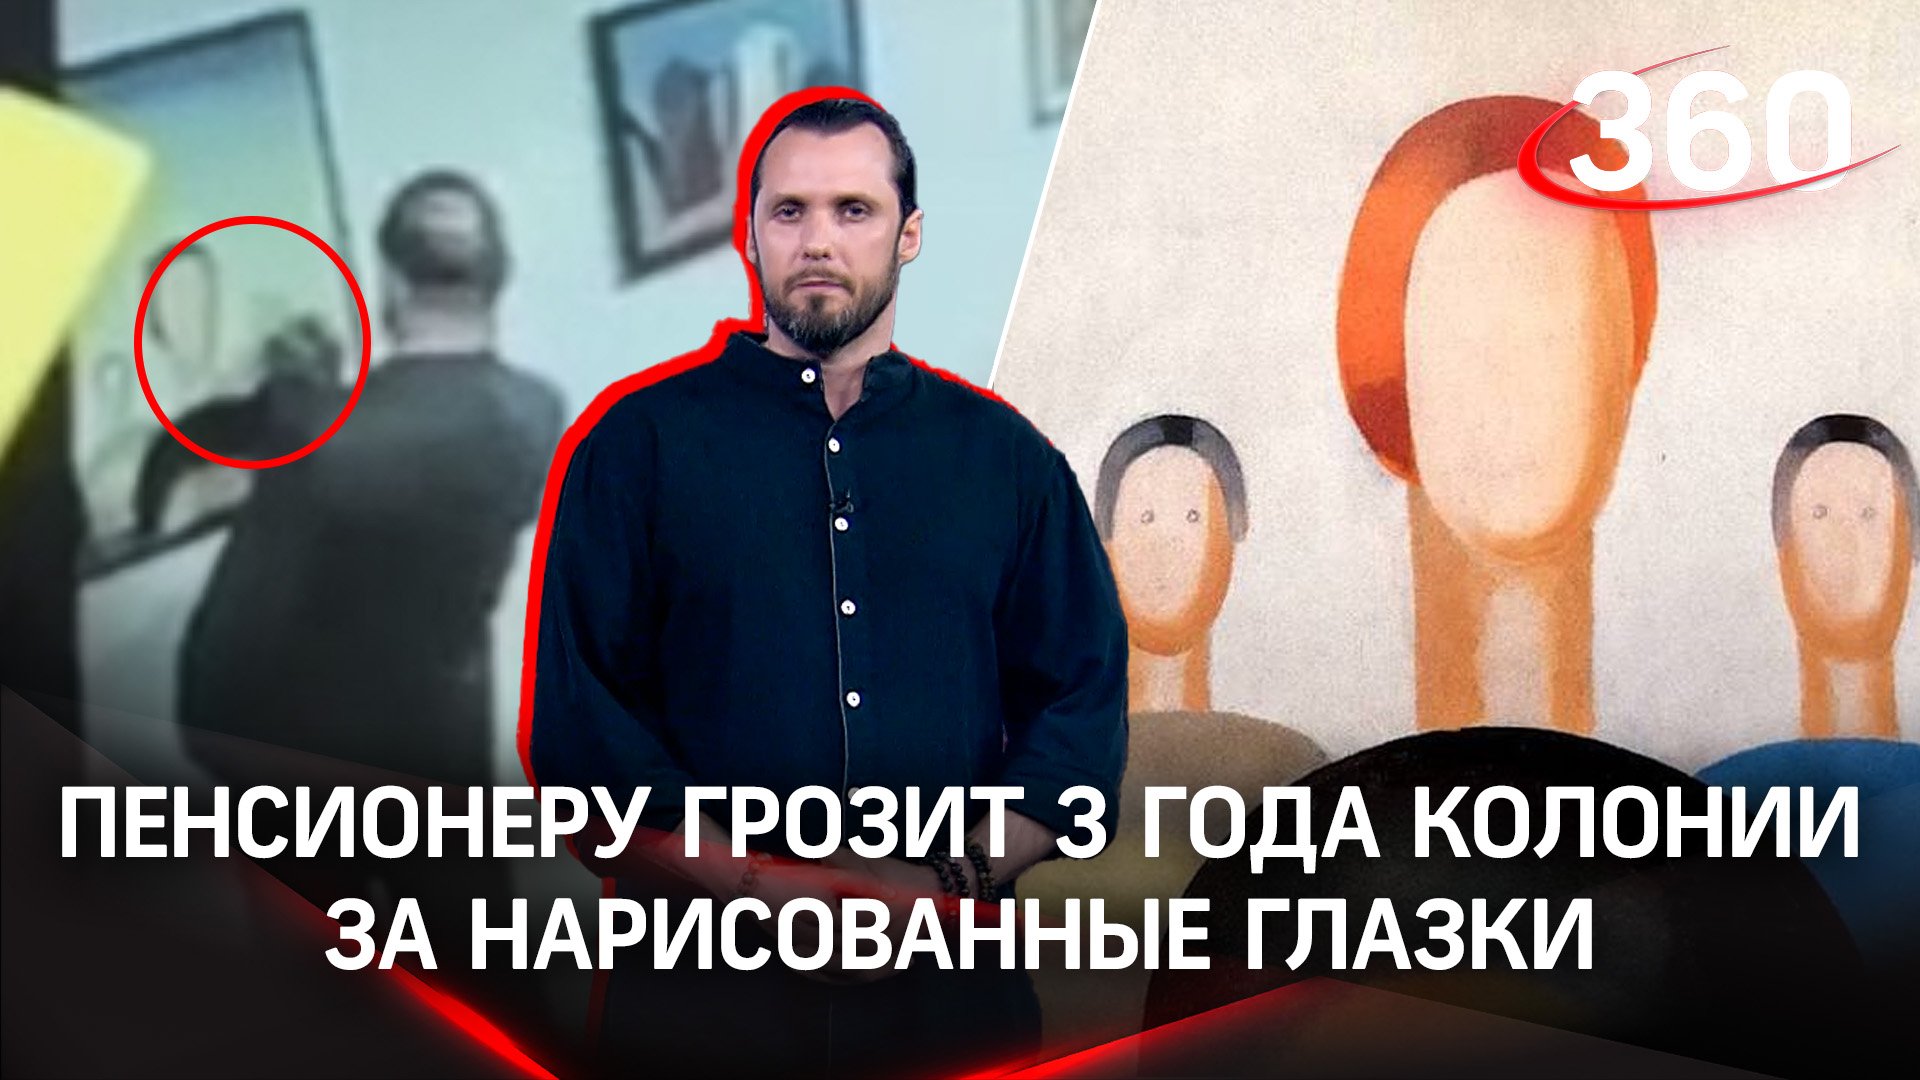 «Охранник испортил шедевр»: Бывшего сотрудника Ельцин-центра обвиняют в вандализме